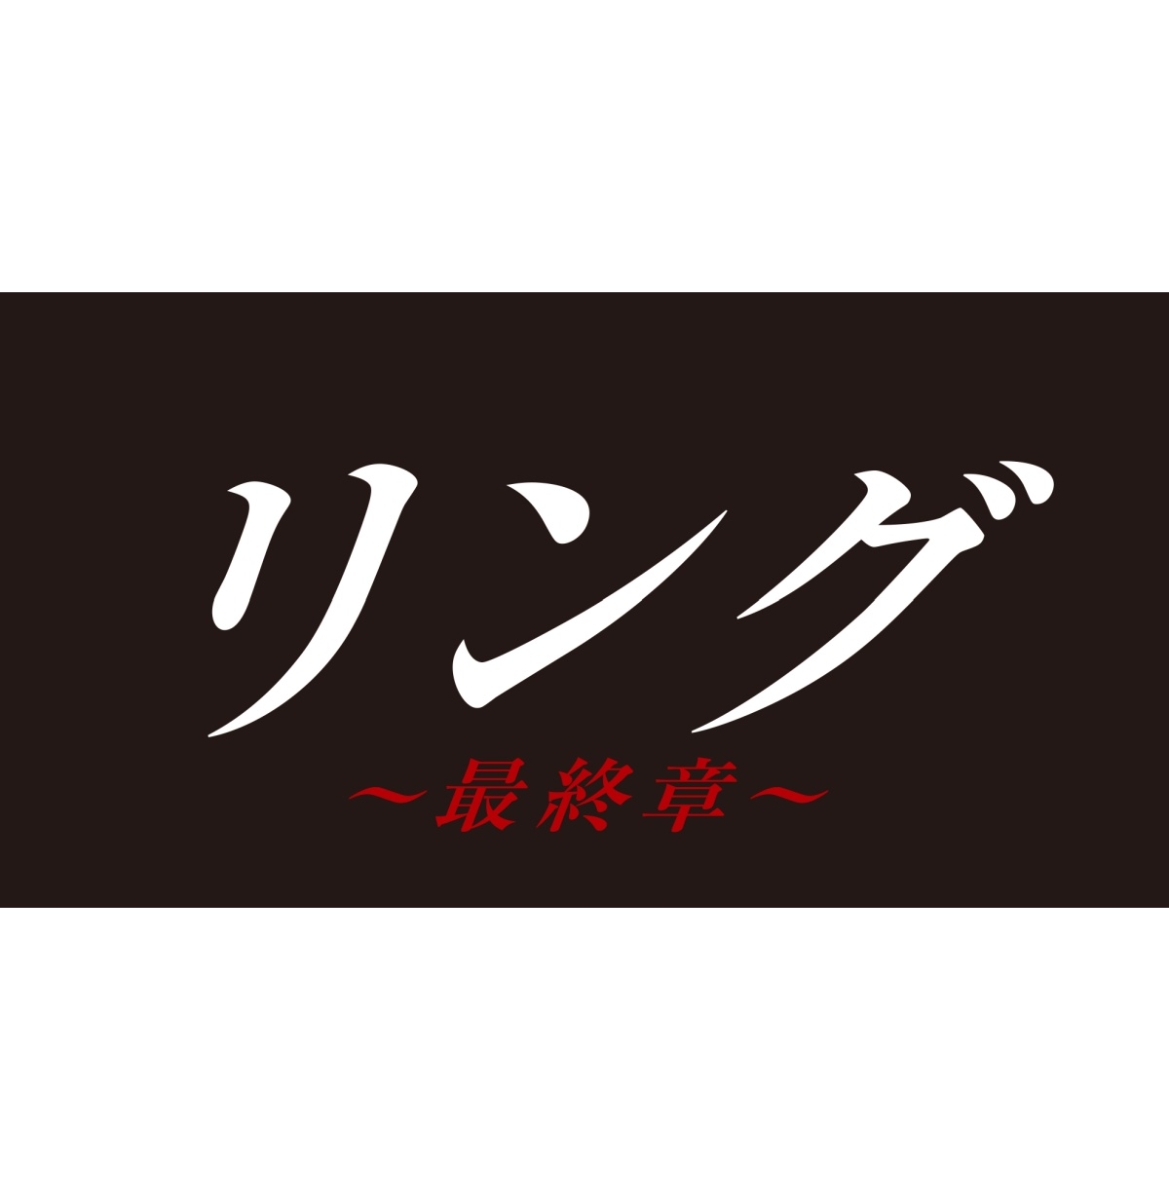 リング〜最終章〜 Blu-ray BOX【Blu-ray】画像